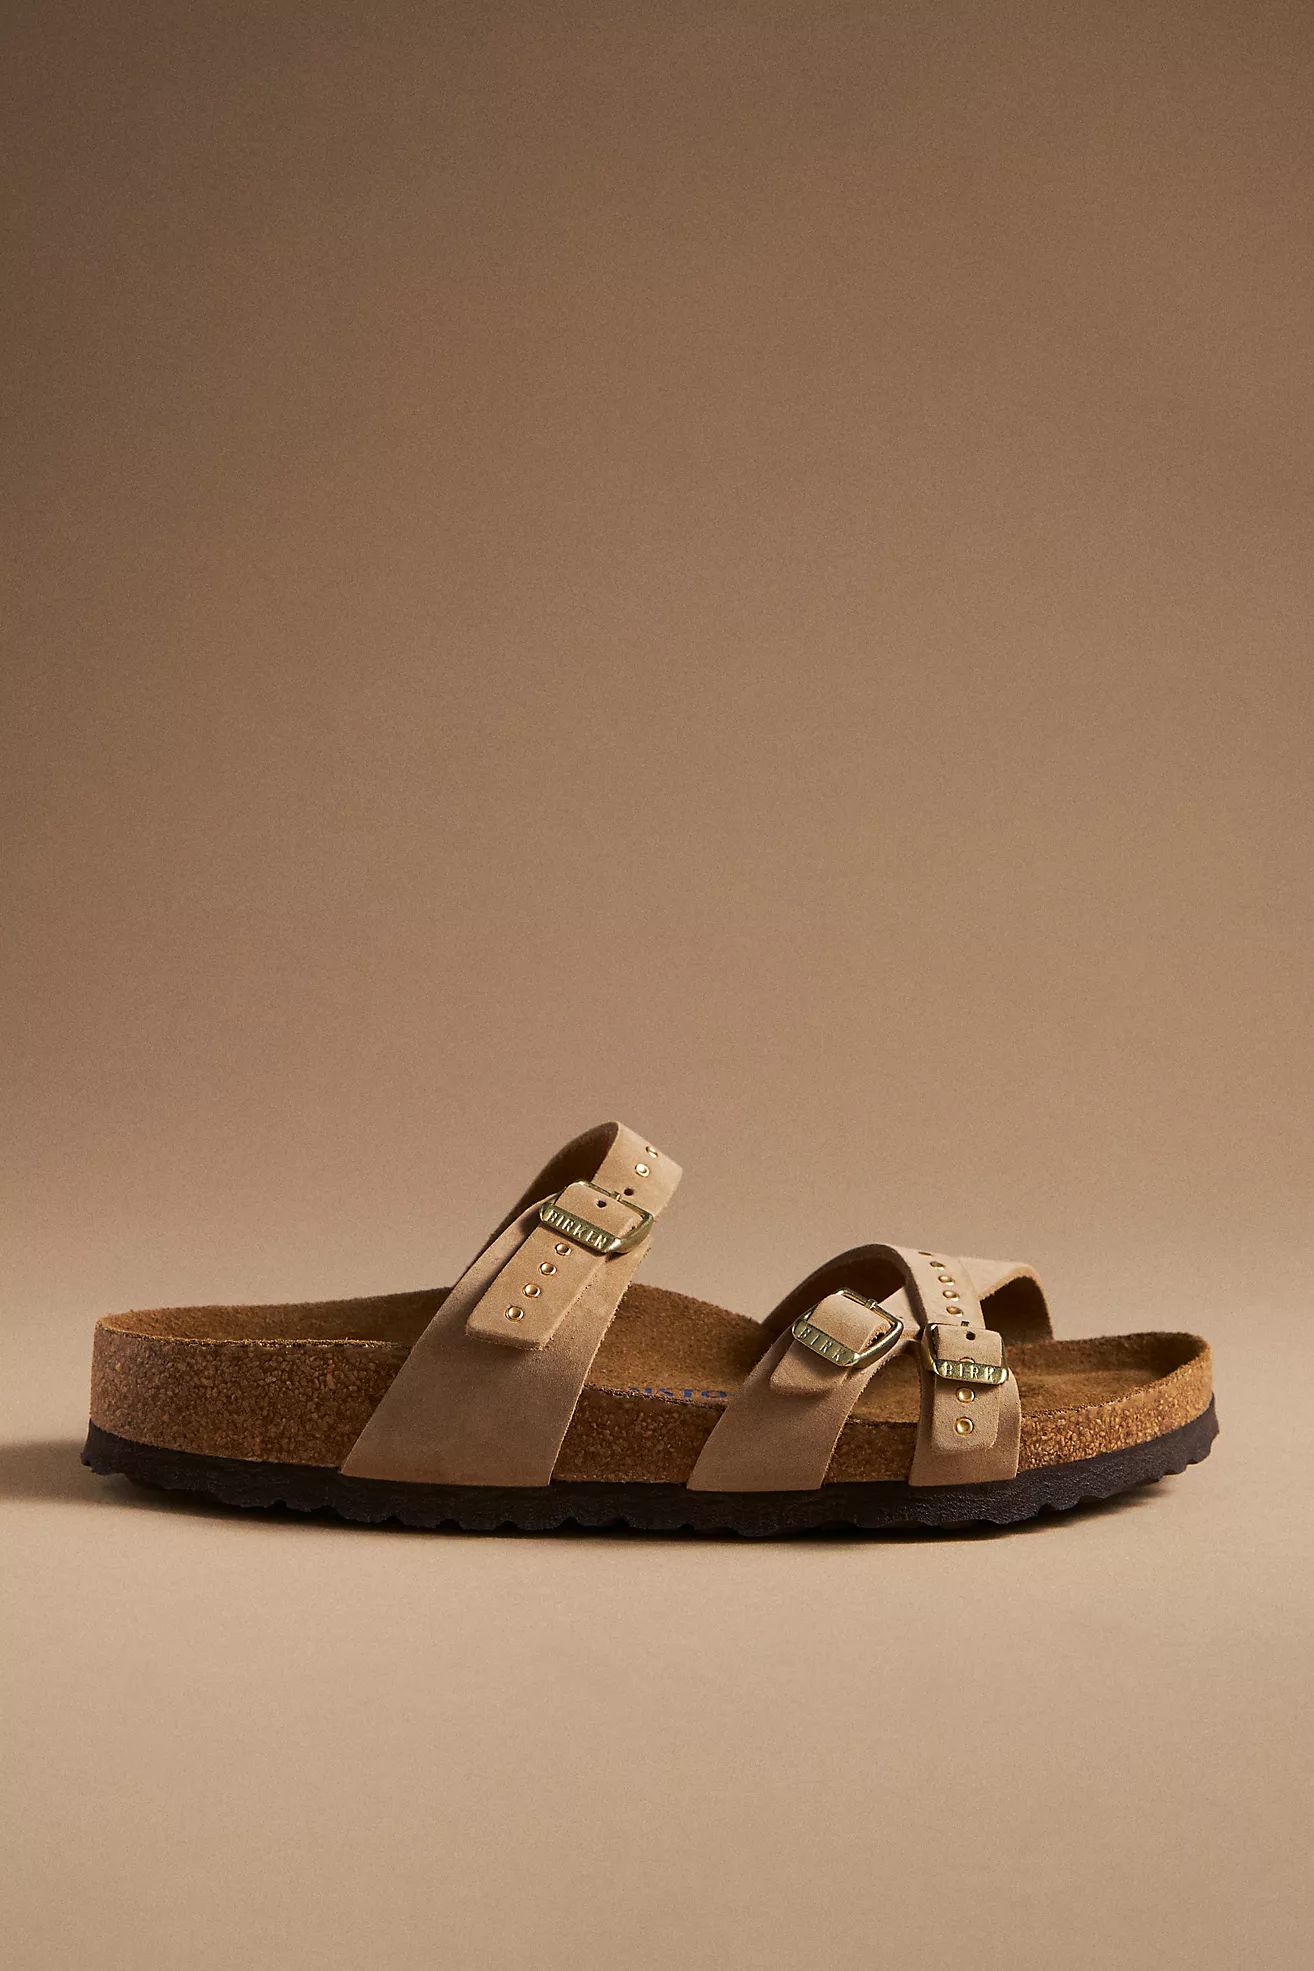 Birkenstock Franca Soft Footbed Sandals | Anthropologie (US)